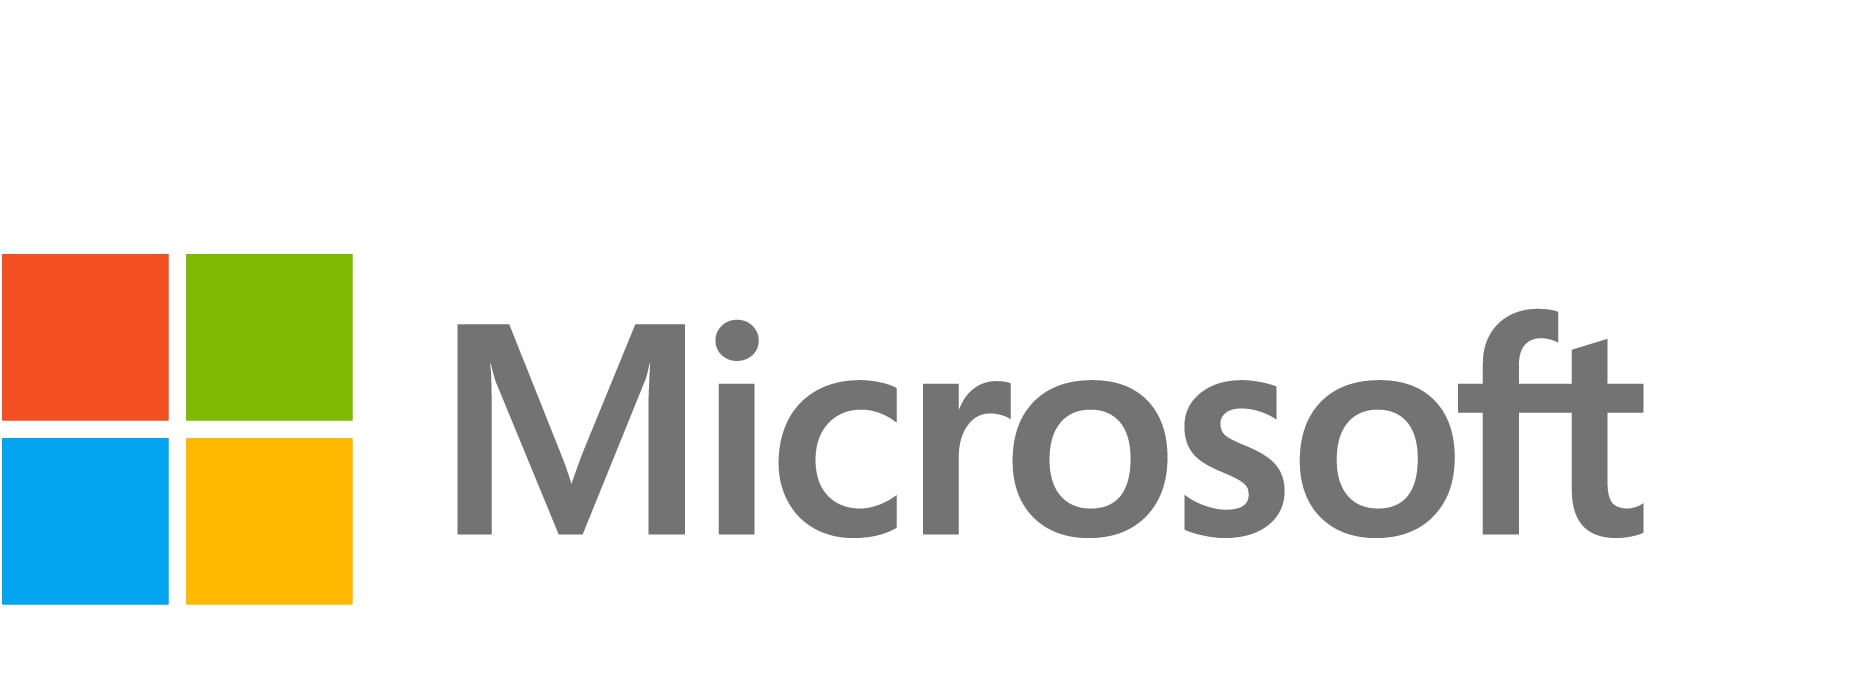 Microsoft SQL Server Standard Edition - license - 2 cores